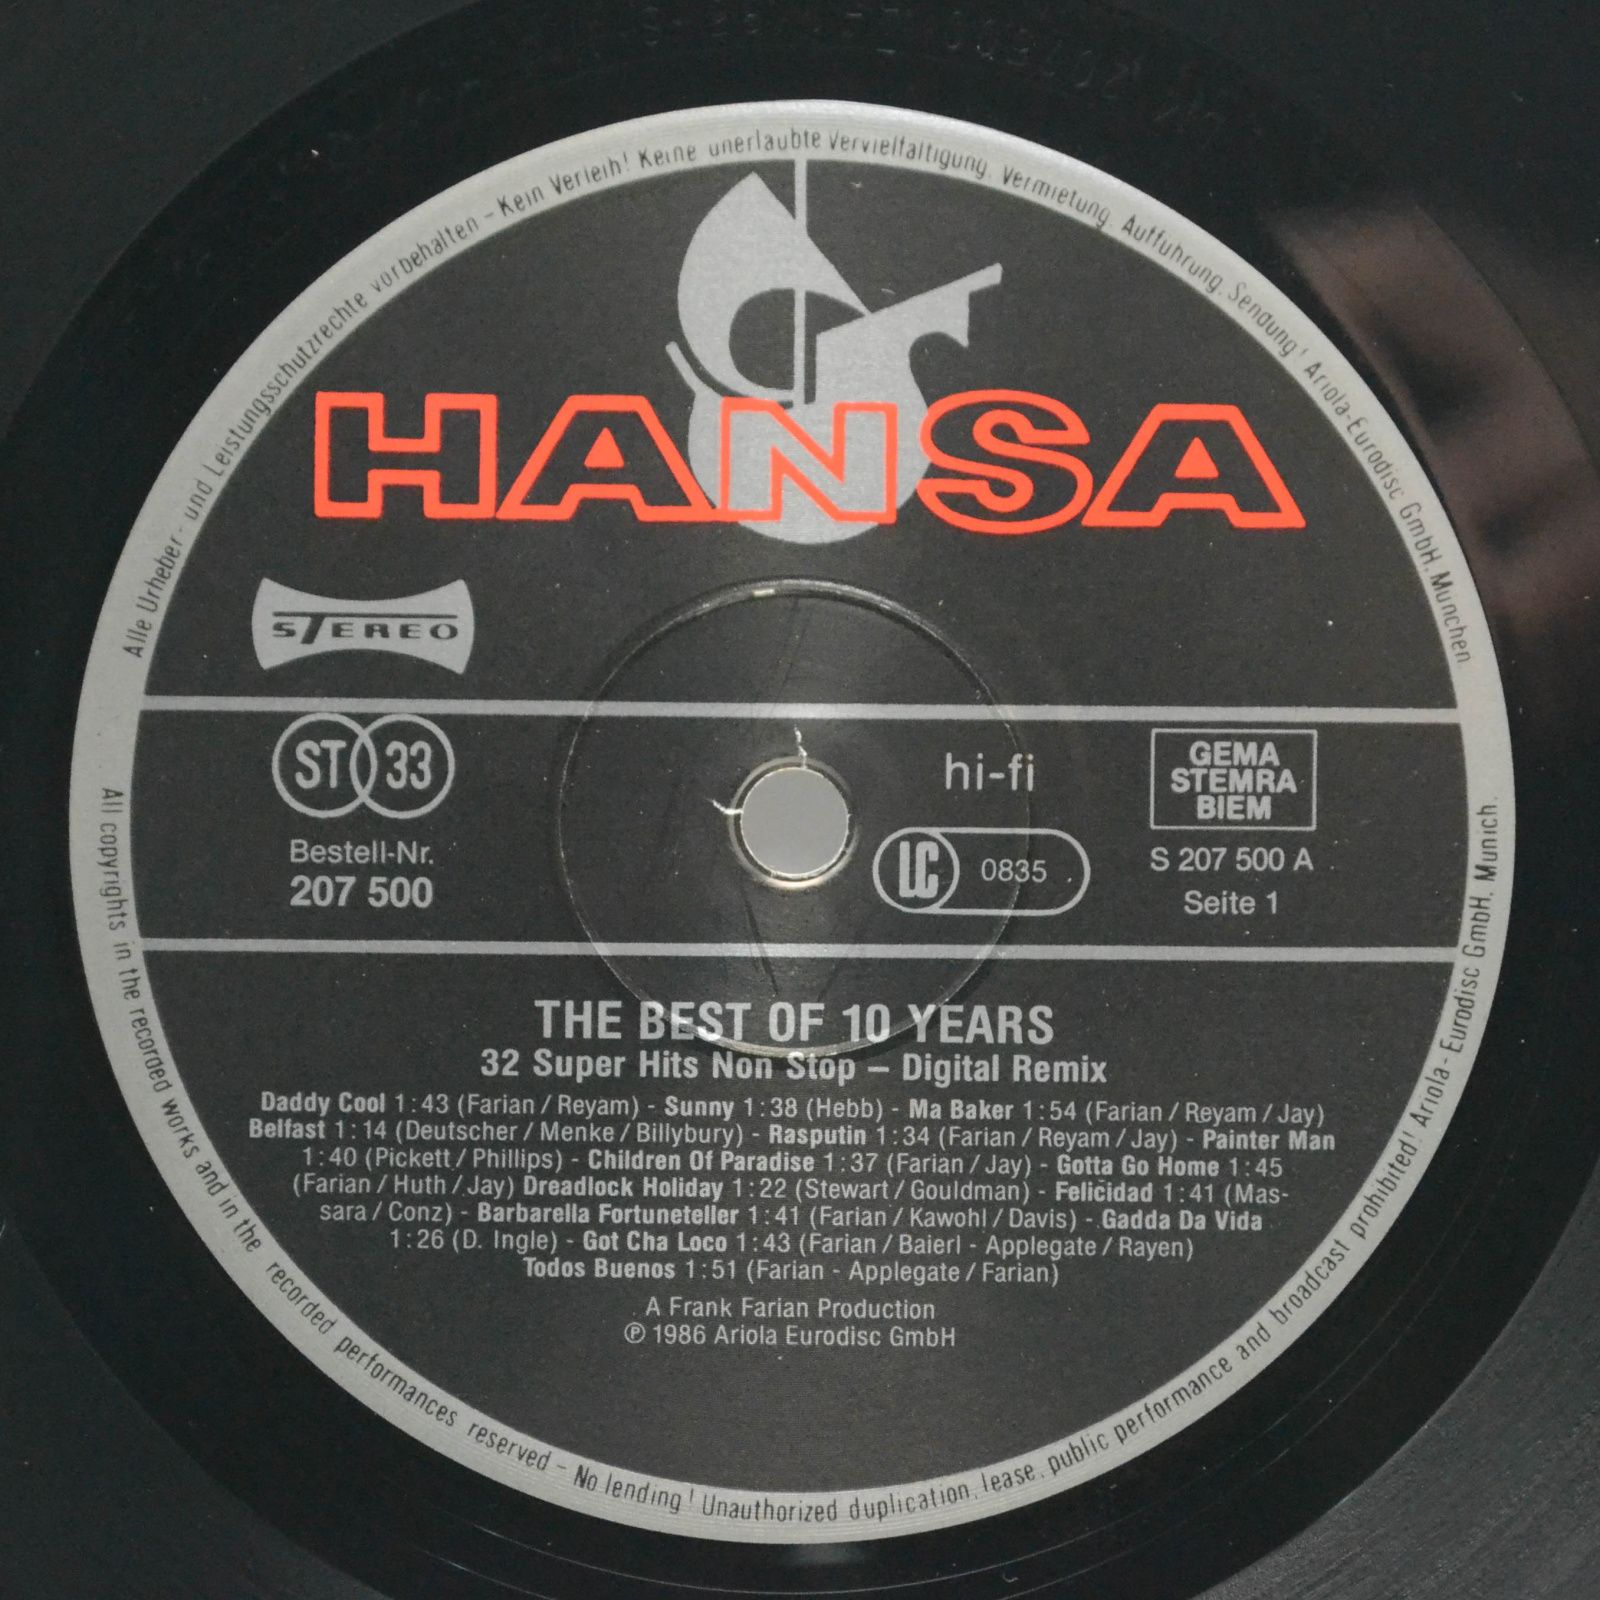 Boney M. — The Best Of 10 Years, 1986